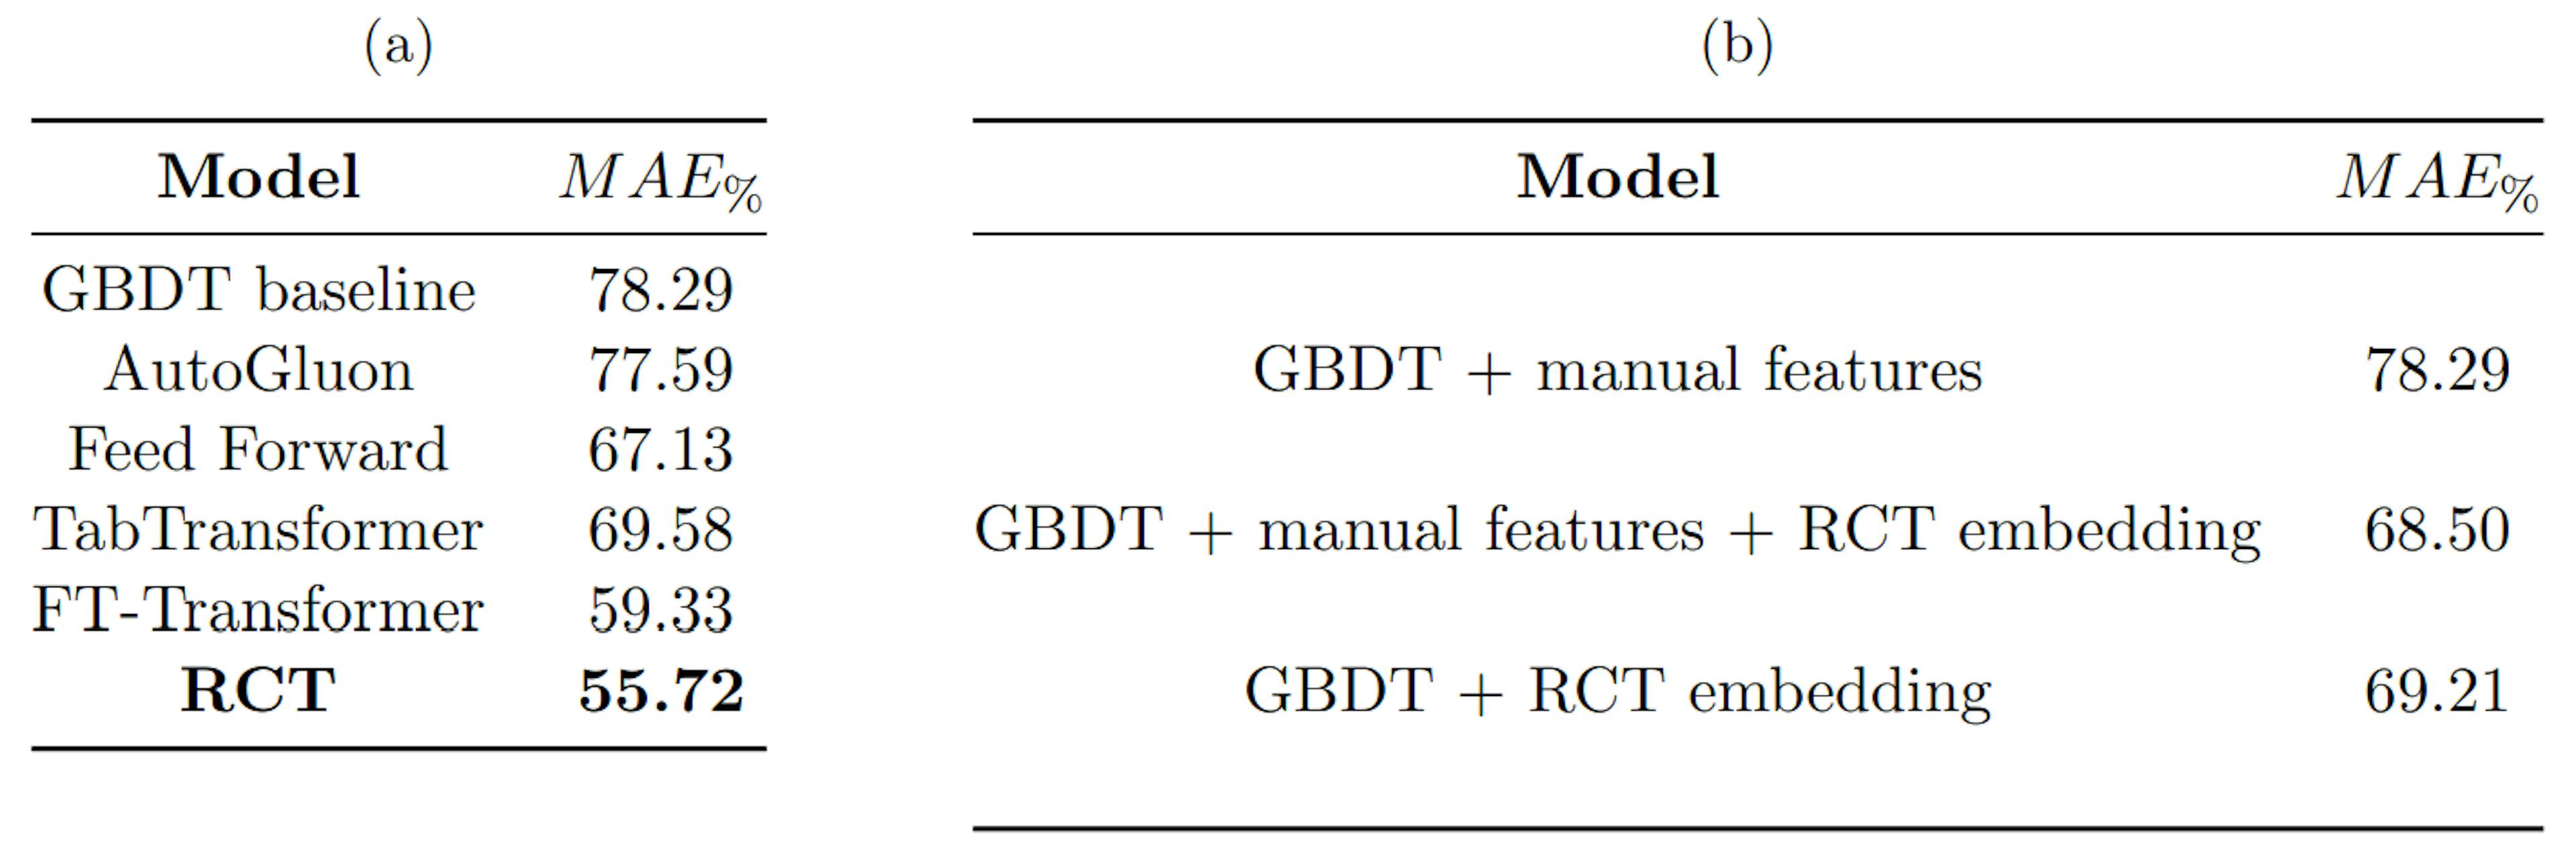 Bảng 1: (a) so sánh hiệu suất của RCT với các điểm chuẩn khác nhau, (b) so sánh hiệu suất của đường cơ sở GBDT với GBDT được đào tạo bằng cách nhúng RCT. MAE% được tính như trong Công thức 4.